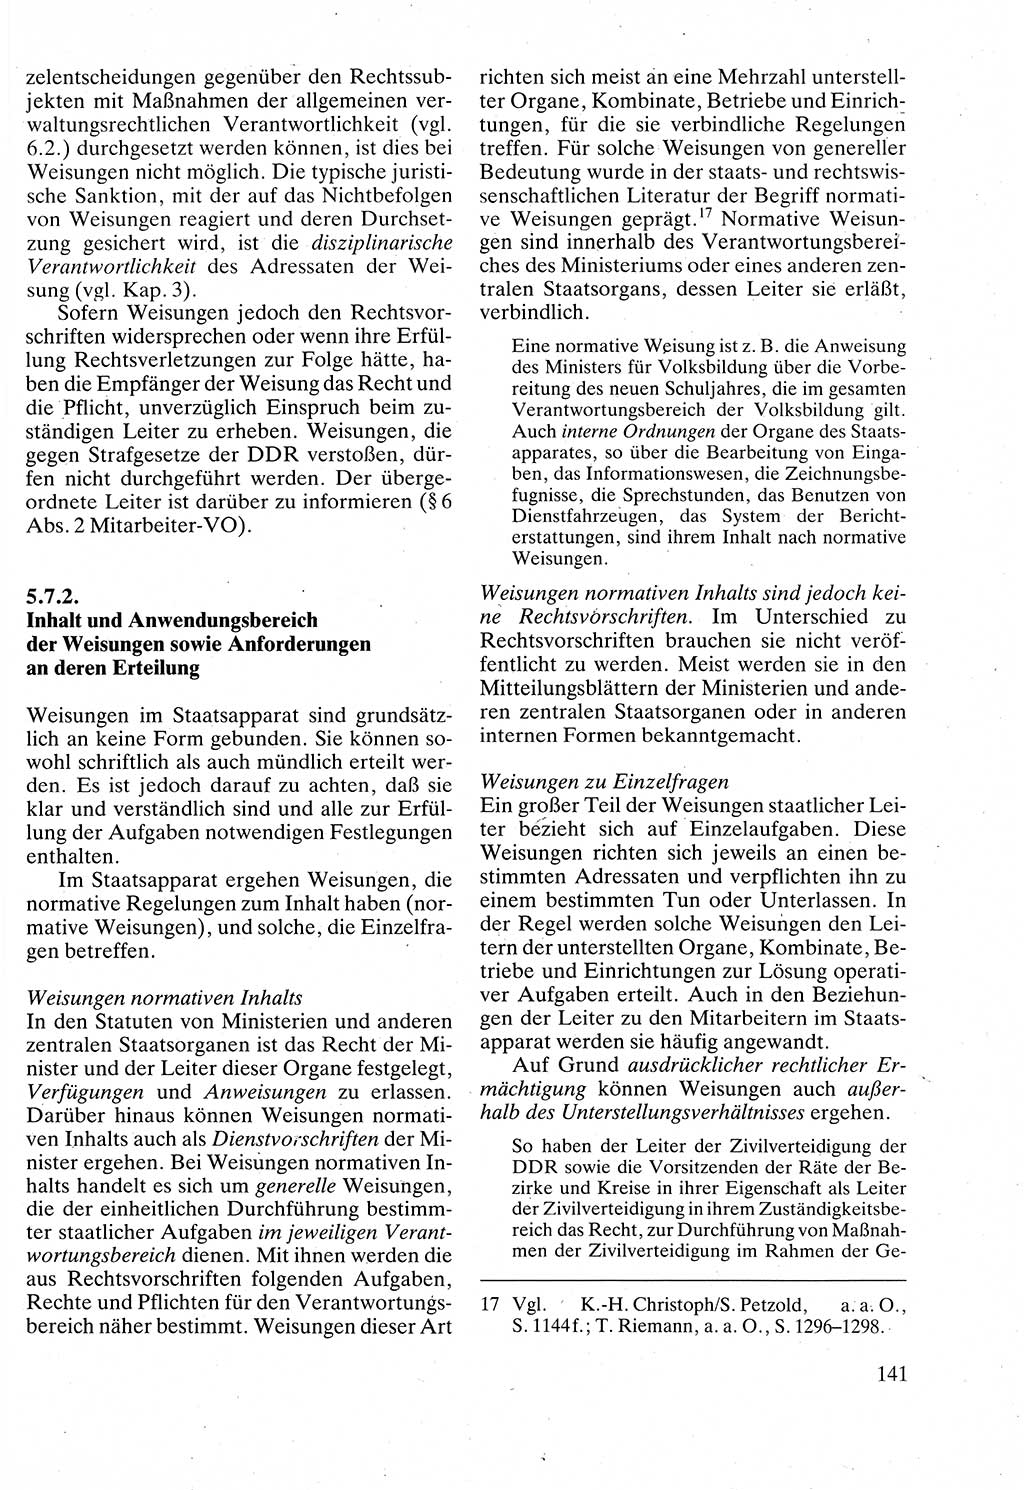 Verwaltungsrecht [Deutsche Demokratische Republik (DDR)], Lehrbuch 1988, Seite 141 (Verw.-R. DDR Lb. 1988, S. 141)